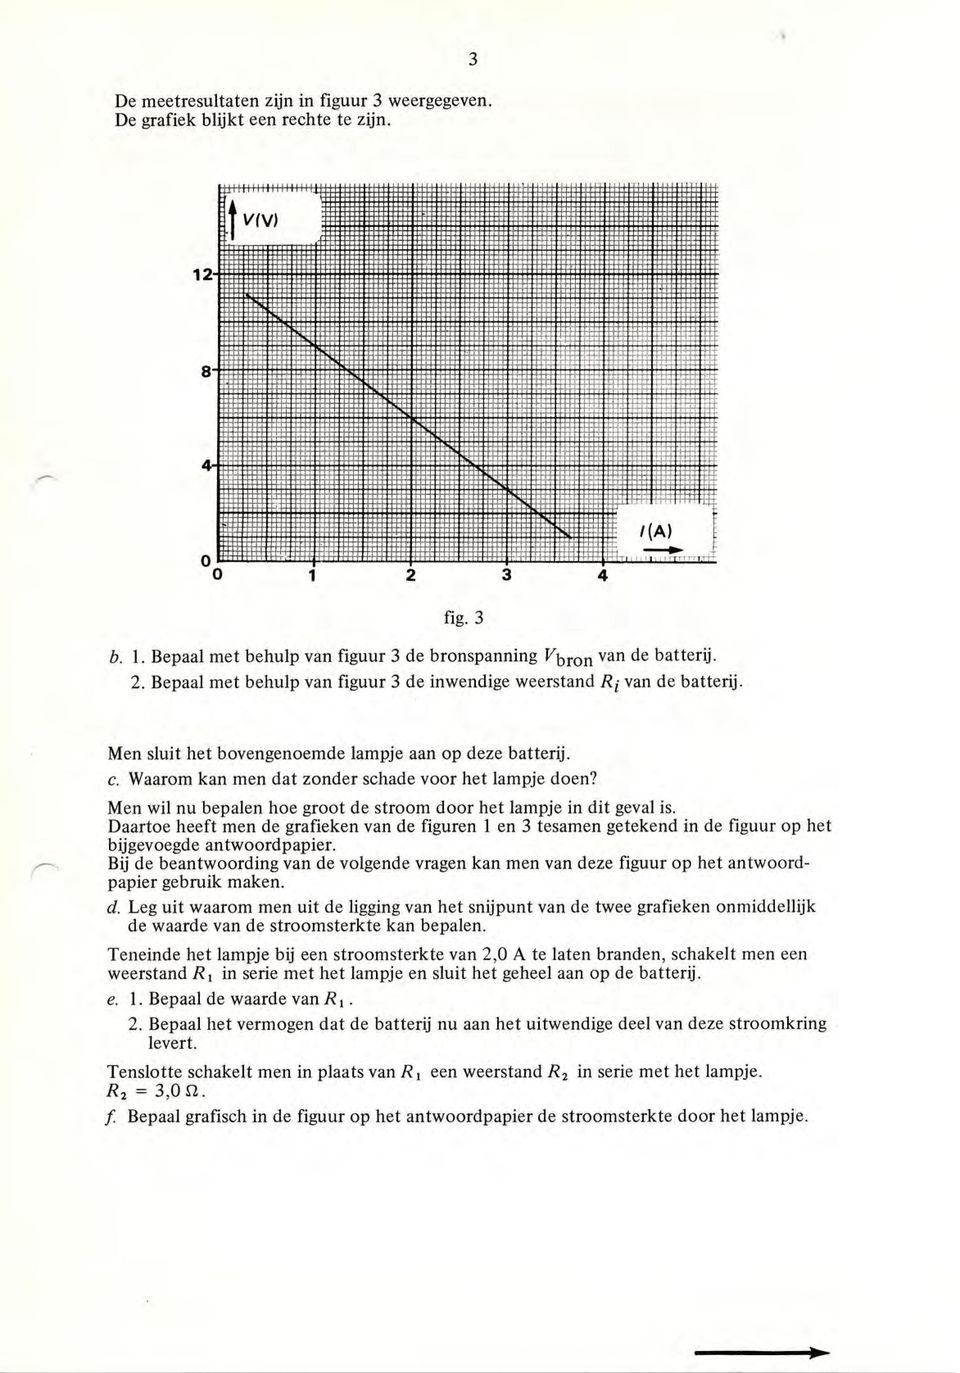 Daartoe heeft men de grafieken van de figuren 1 en 3 tesamen getekend in de figuur op het bijgevoegde antwoordpapier.